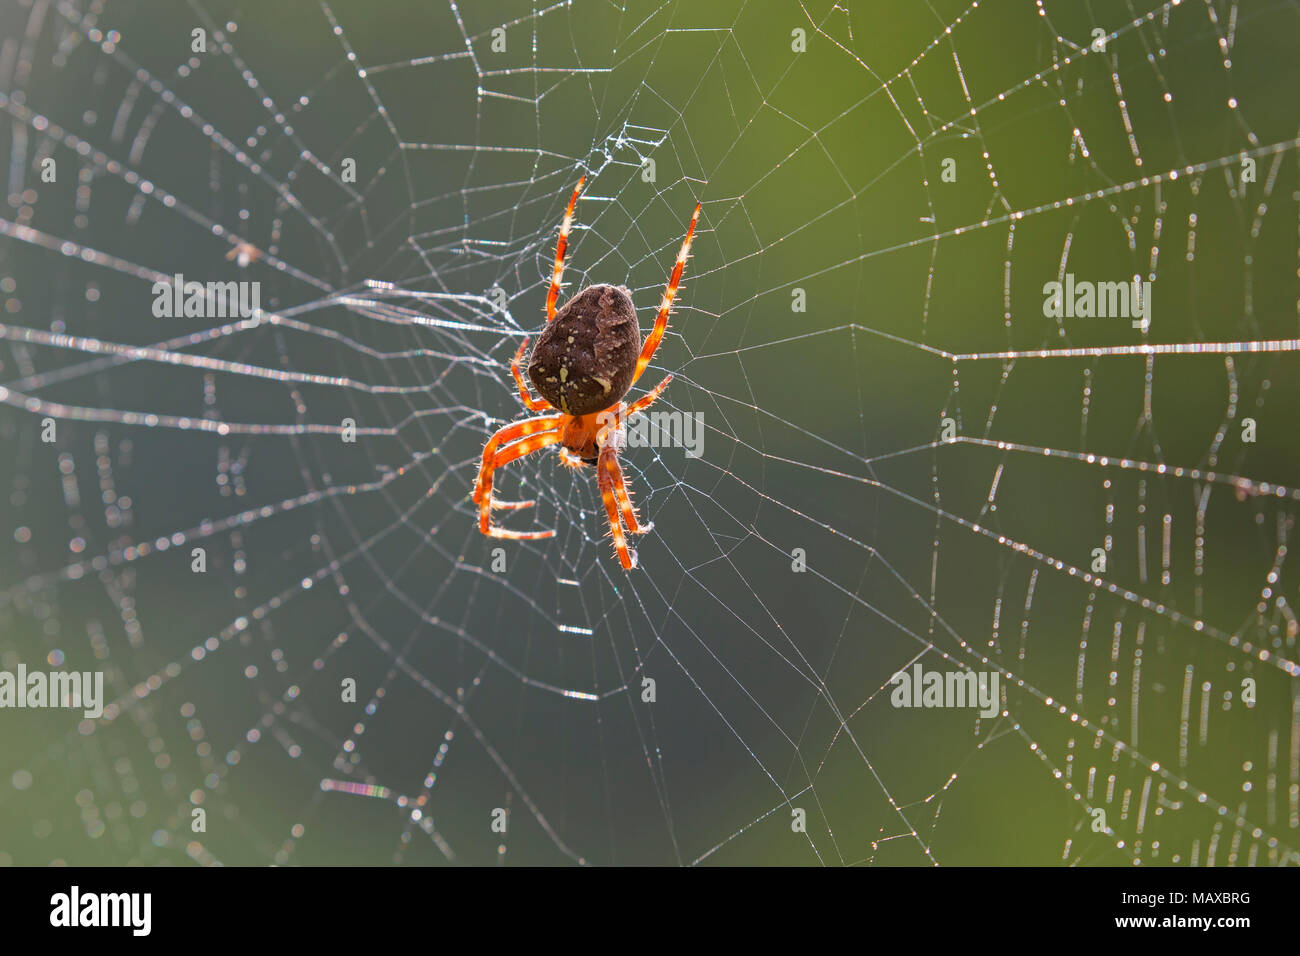 Giardino europeo spider / diadema spider / cross spider / incoronato orb weaver (Araneus diadematus) nella tela di ragno Foto Stock